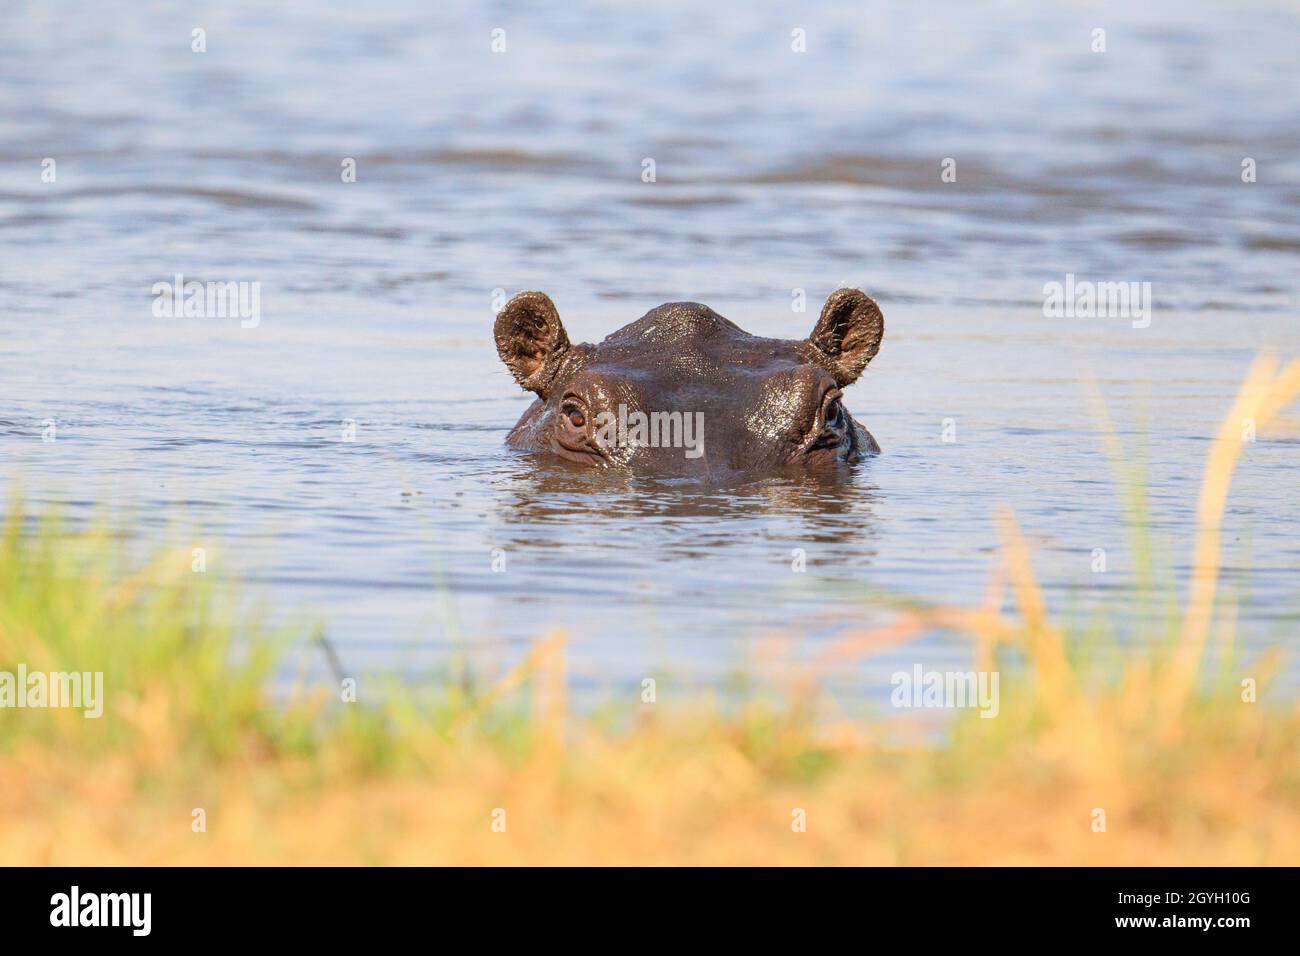 Hippo (Hippopotamus amphibius), portrait of face. Okavango Delta, Botswana, Africa Stock Photo